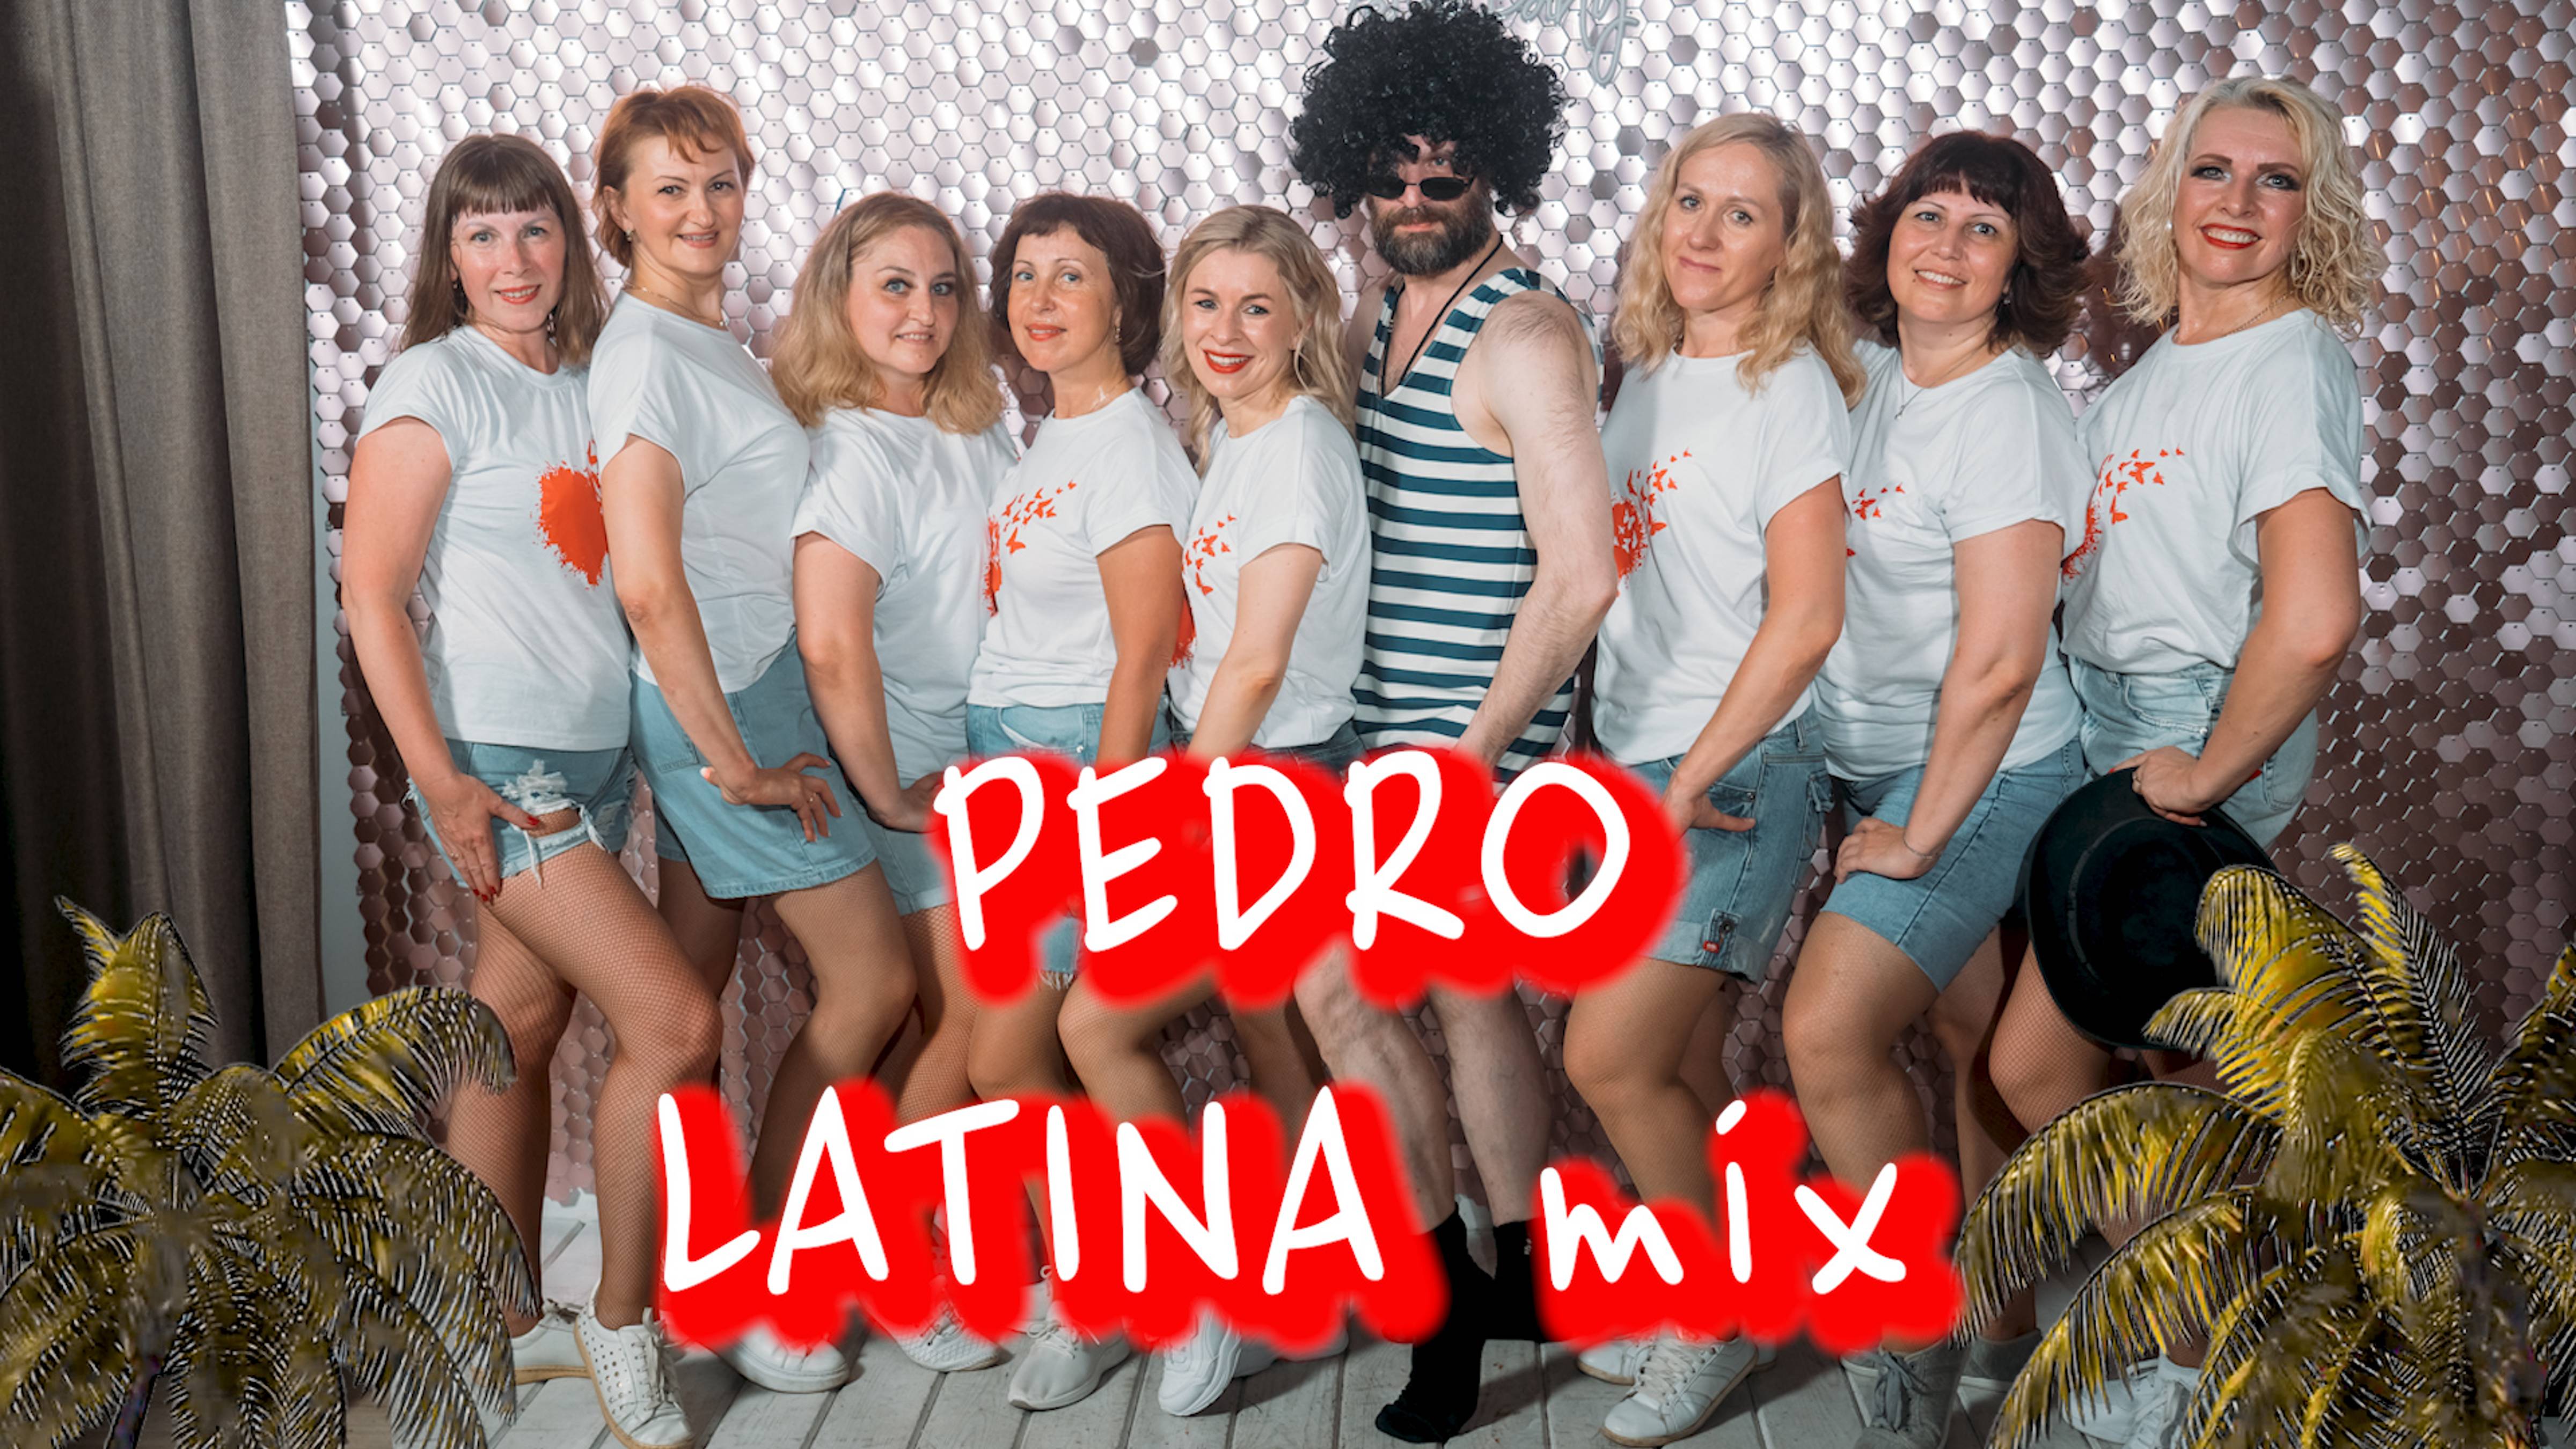 Pedro!😎 Отрываемся!😜 LATINA mix и Наталья Асриян.🔥😎 Ярославль. Танцевальная студия SMART.